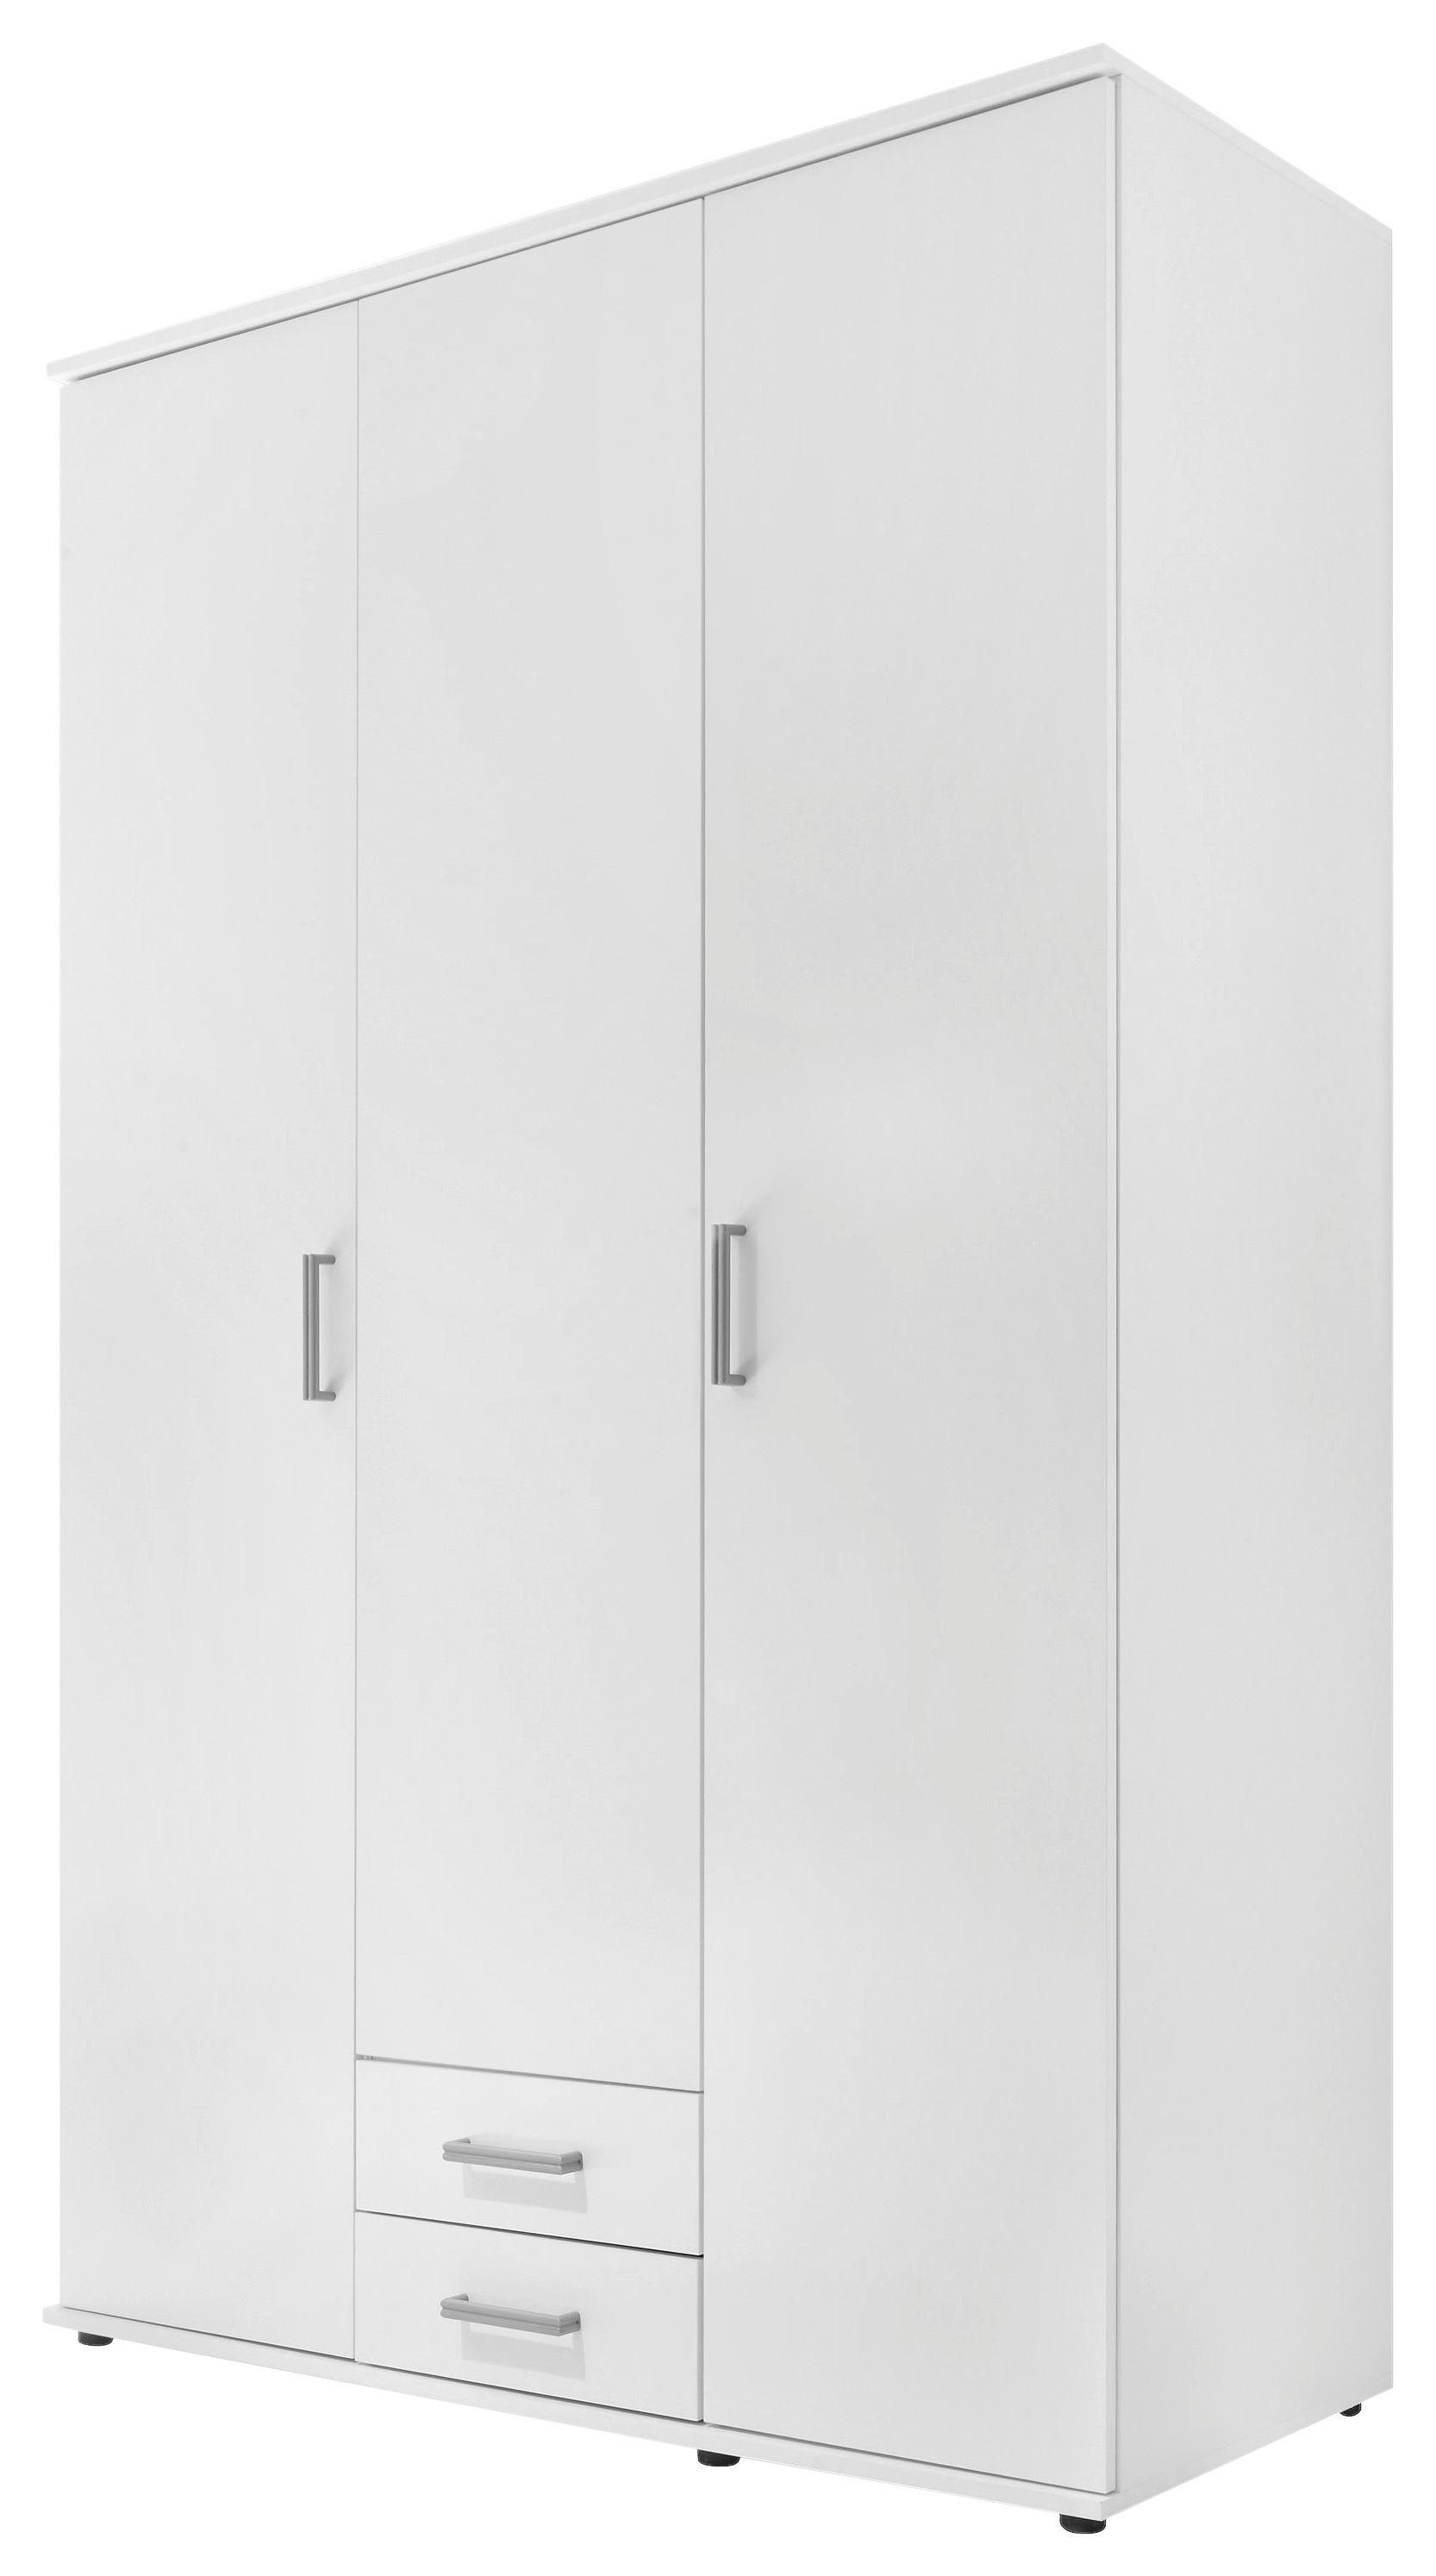 Drehtürenschrank in Weiß - Alufarben/Weiß, Holzwerkstoff/Kunststoff (120/195cm) - Modern Living